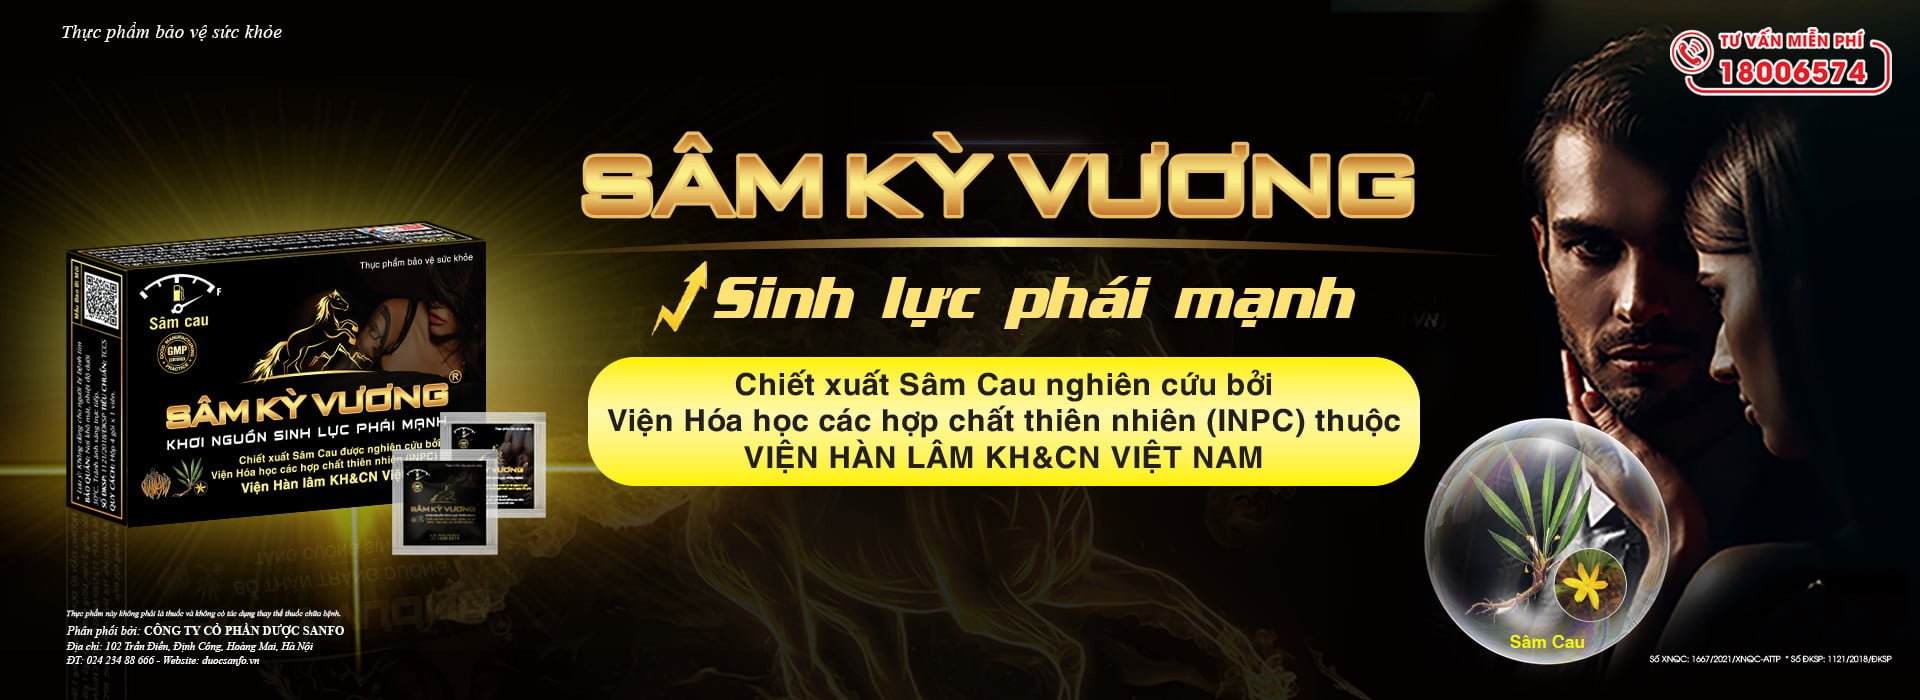 KSCC. Nguyễn Văn Hoan – INPC, Viện Hàn Lâm chia sẻ về công nghệ chiết xuất Sâm Cau trong sản phẩm Sâm Kỳ Vương